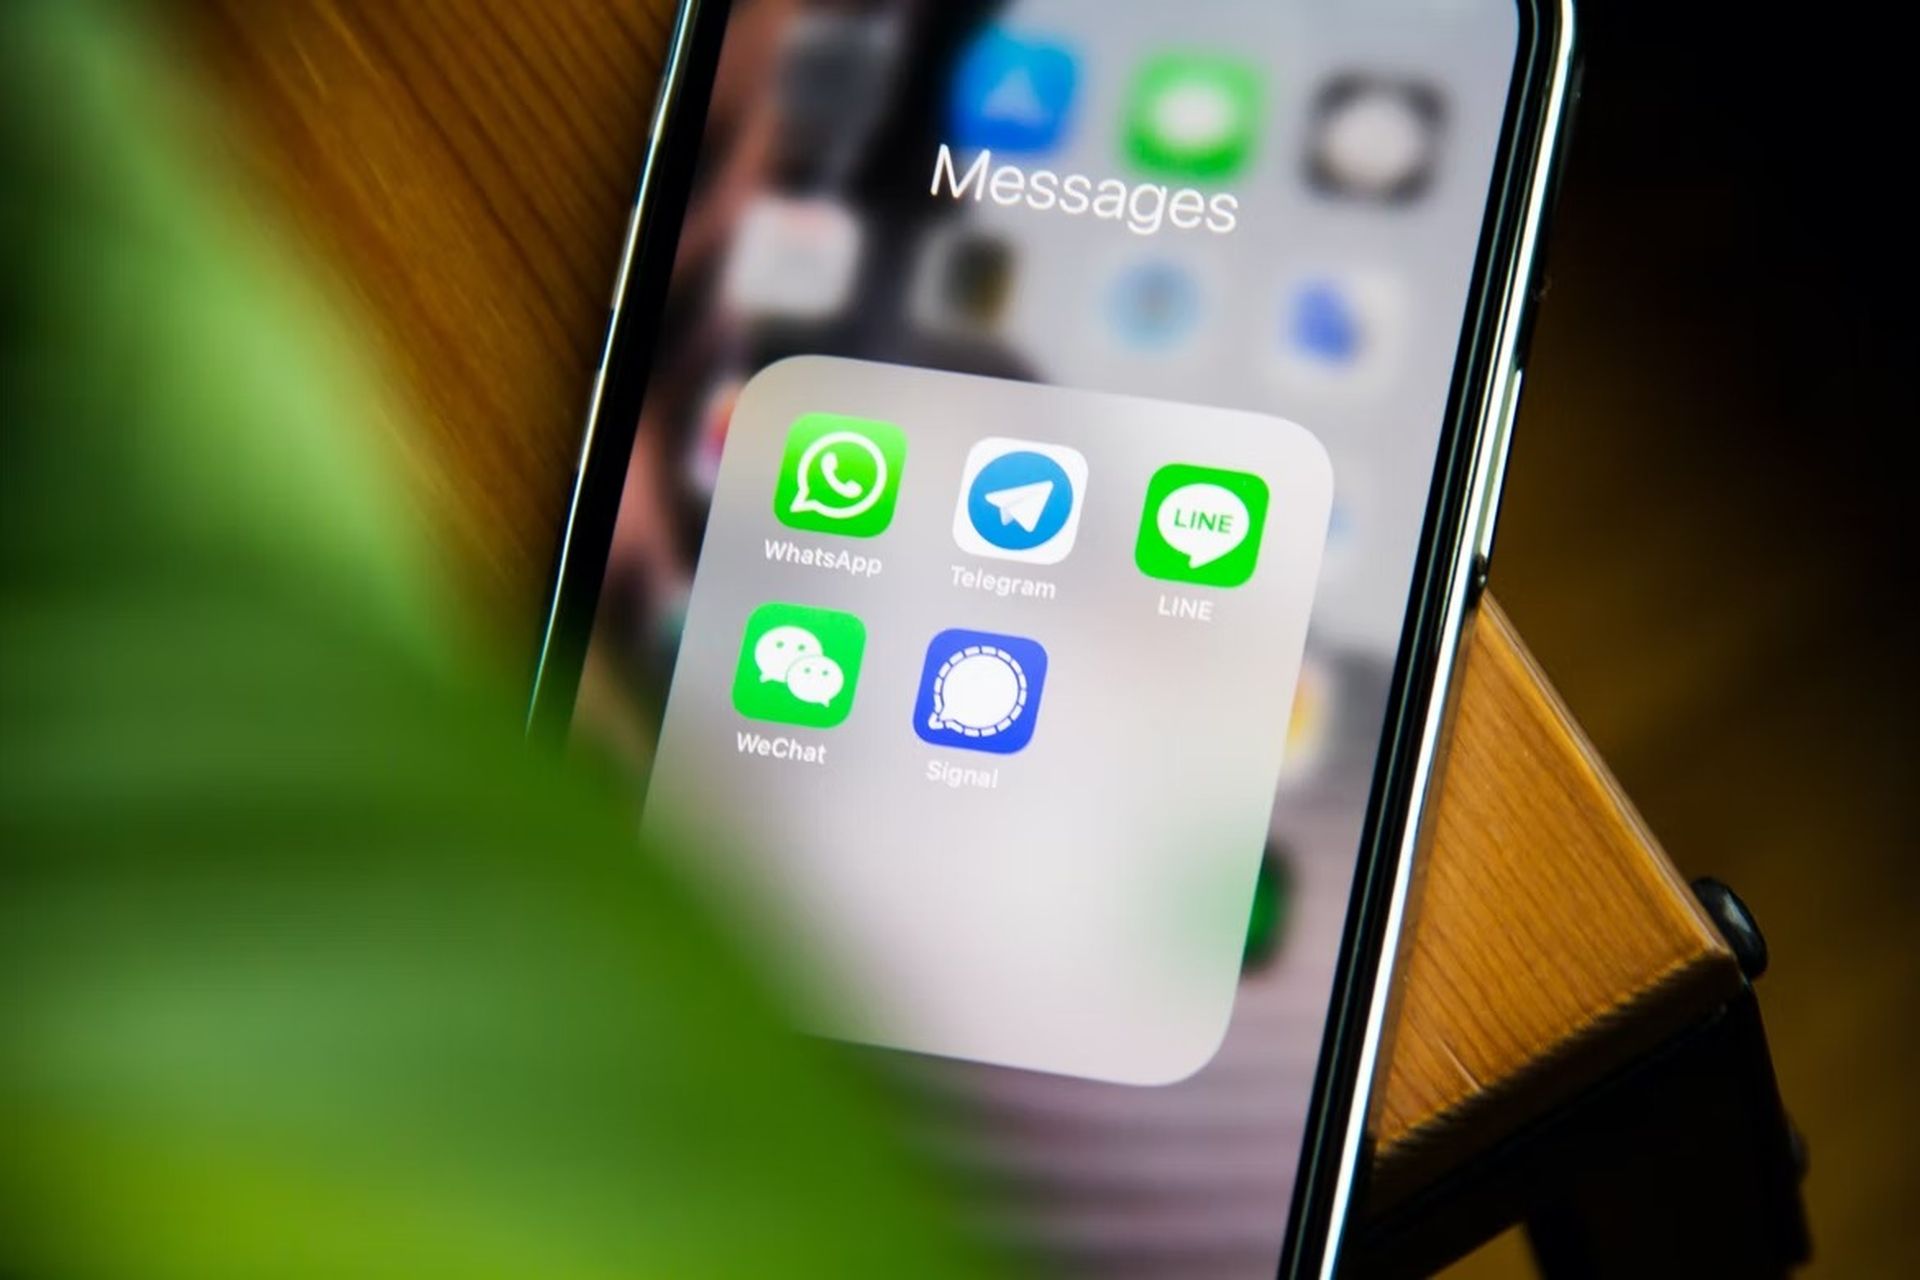 WhatsAppは、2022年末までにiOS10およびiOS11のサポートを終了します。WABetaInfoによって発見された新しい警告により、iPhoneユーザーはソフトウェアをアップグレードして10月24日以降もWhatsAppを引き続き使用するように促されます。